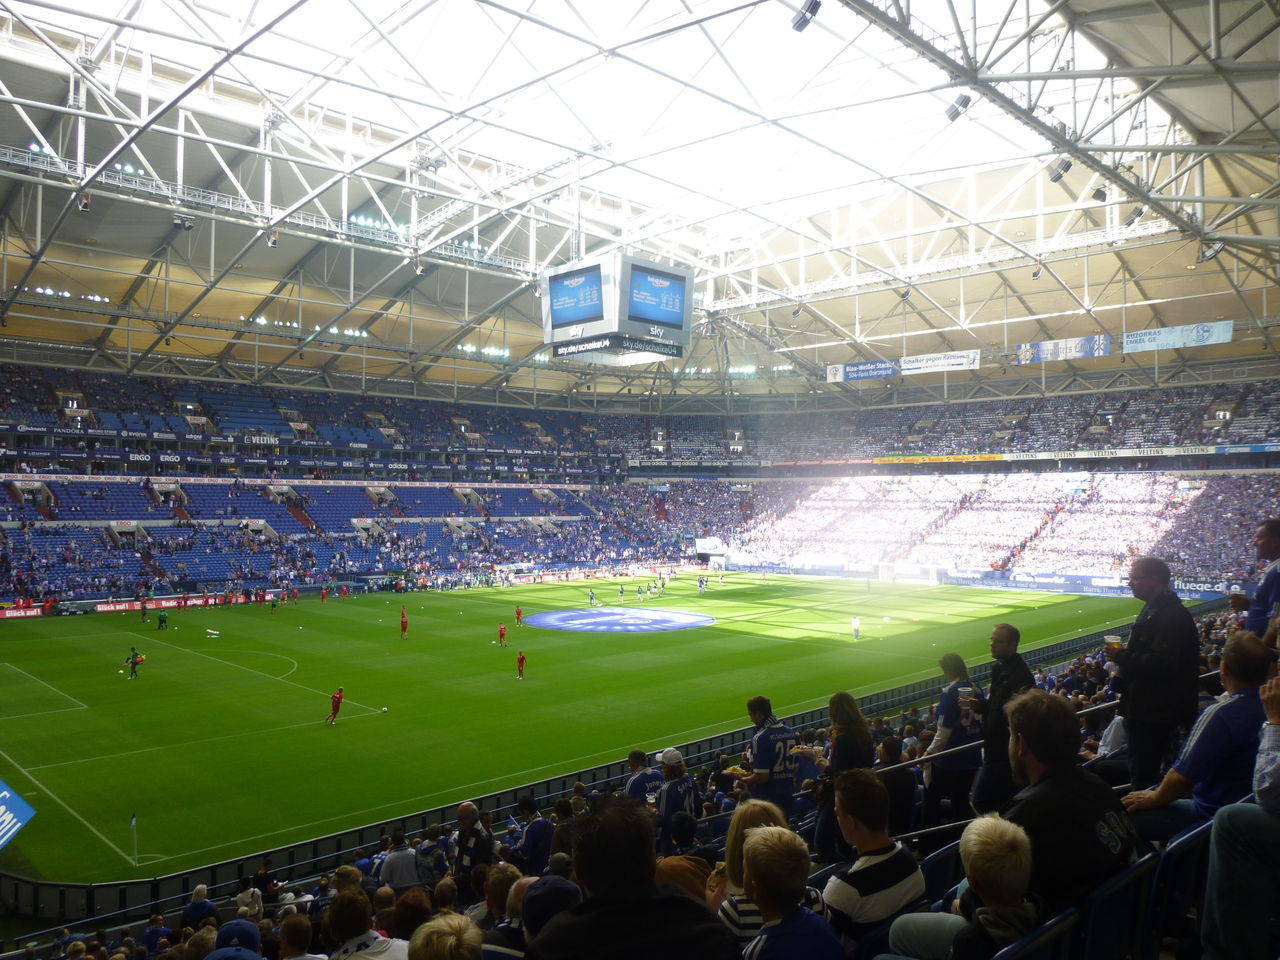 フェルティンス アレーナでの観戦 Fc Schalke 04 が好きな元高校球児によるフットボールブログ 仮